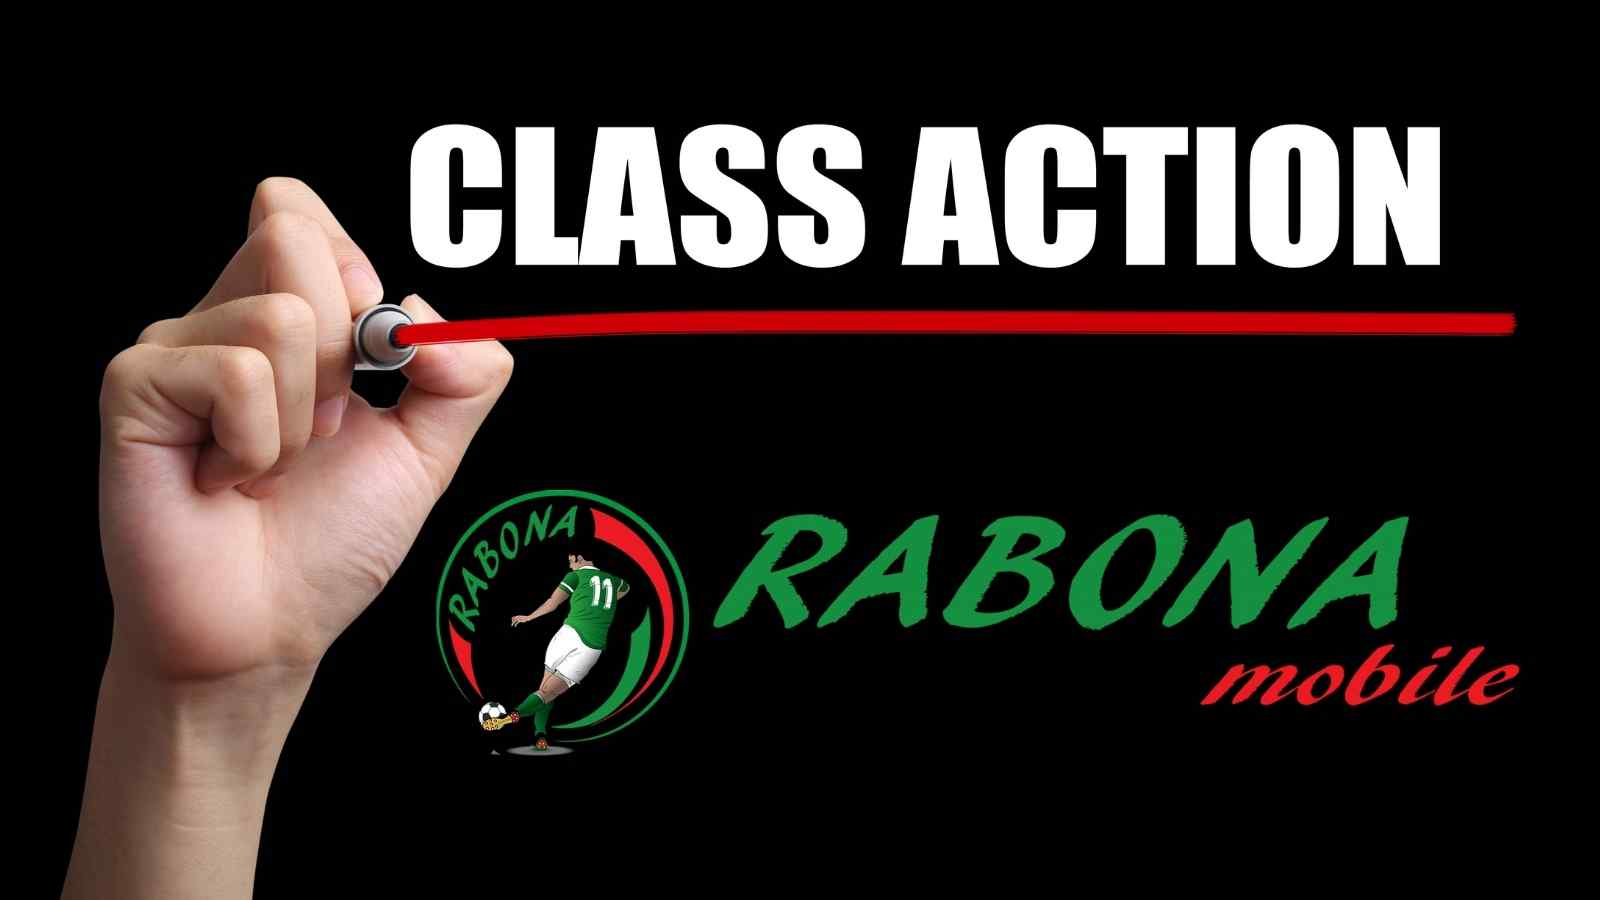 Codici non teme le minacce di Rabona e invita gli ex clienti dell'azienda mobile ad una class action